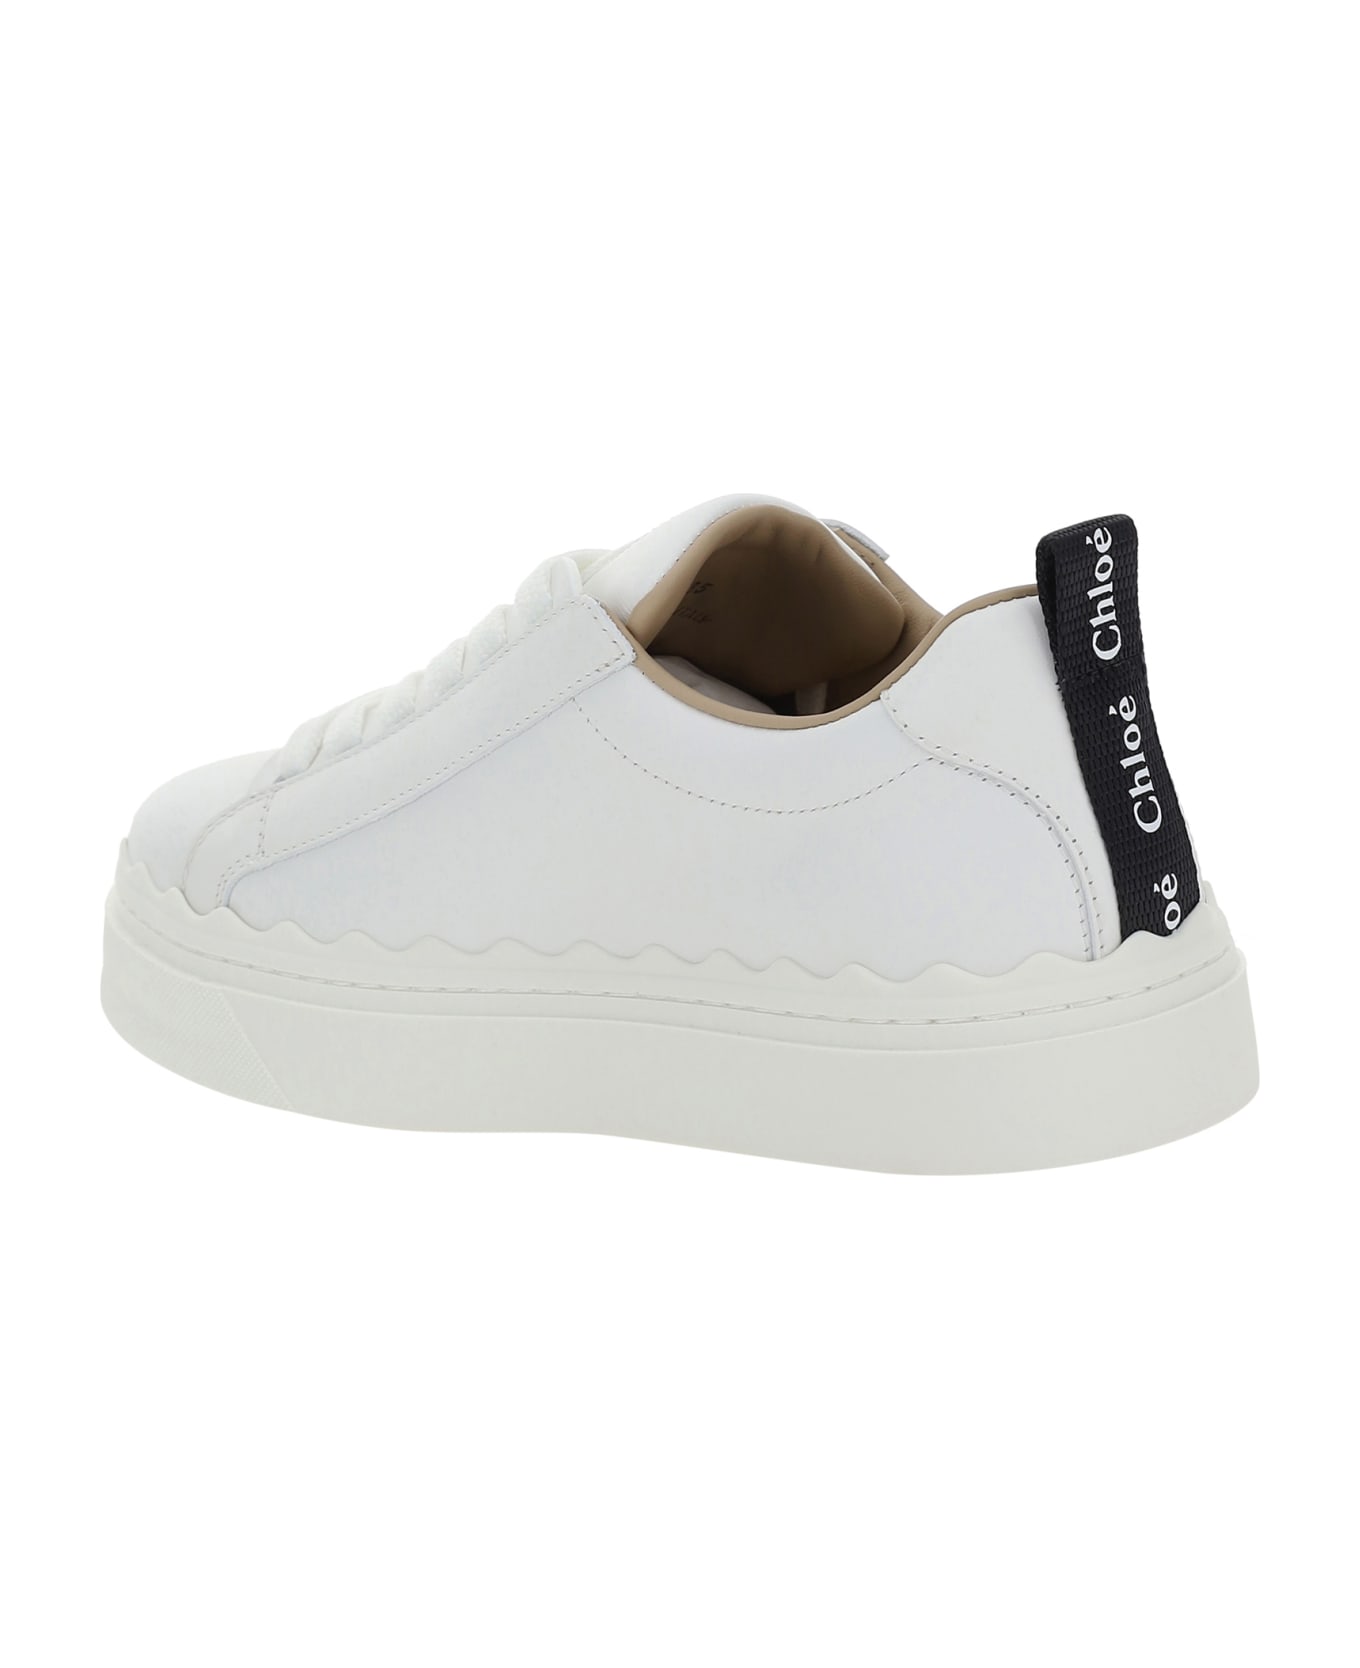 Chloé Sneakers - White スニーカー